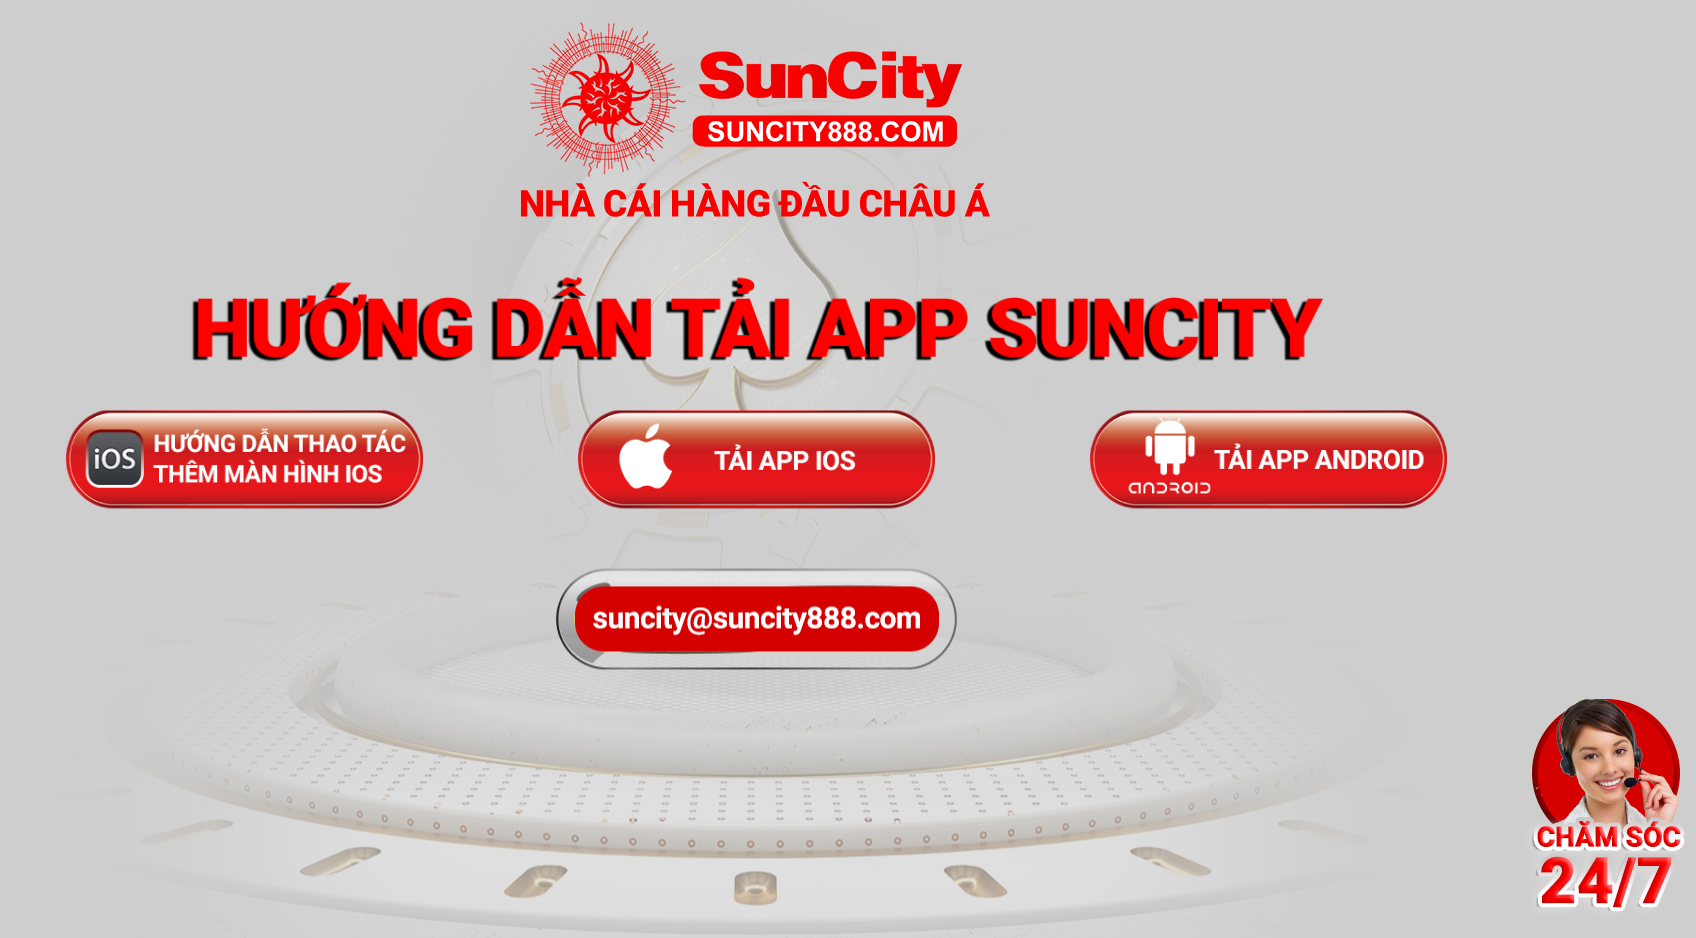 SUNCITY mobile app hỗ trợ trên mọi thiết bị di động, đơn giản, dễ thực hiện